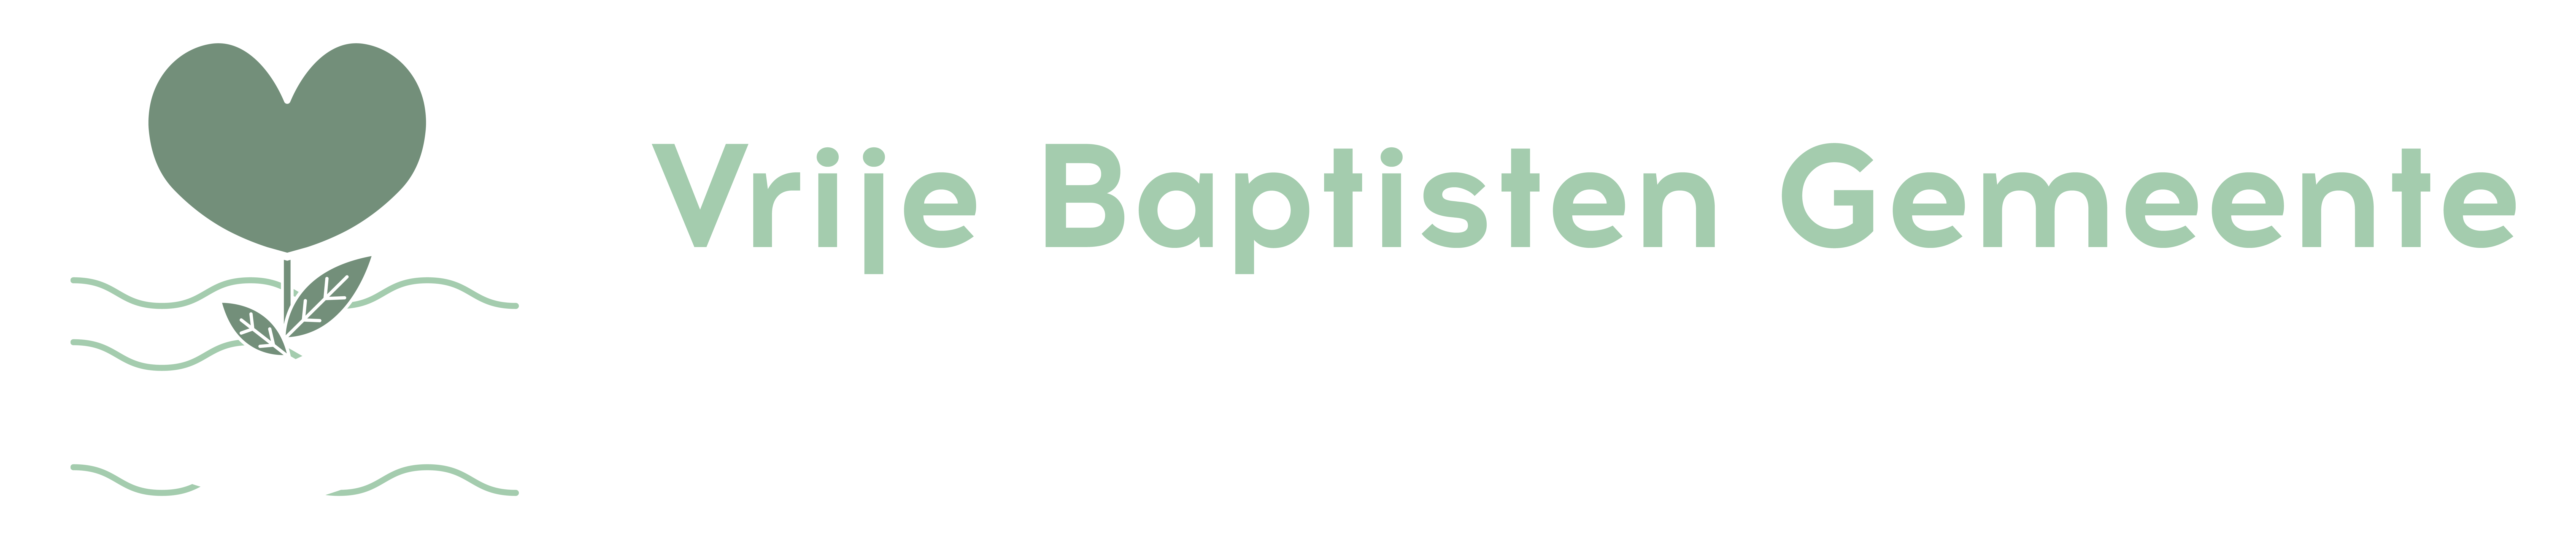 Vrije Baptisten Gemeente Graafstroom